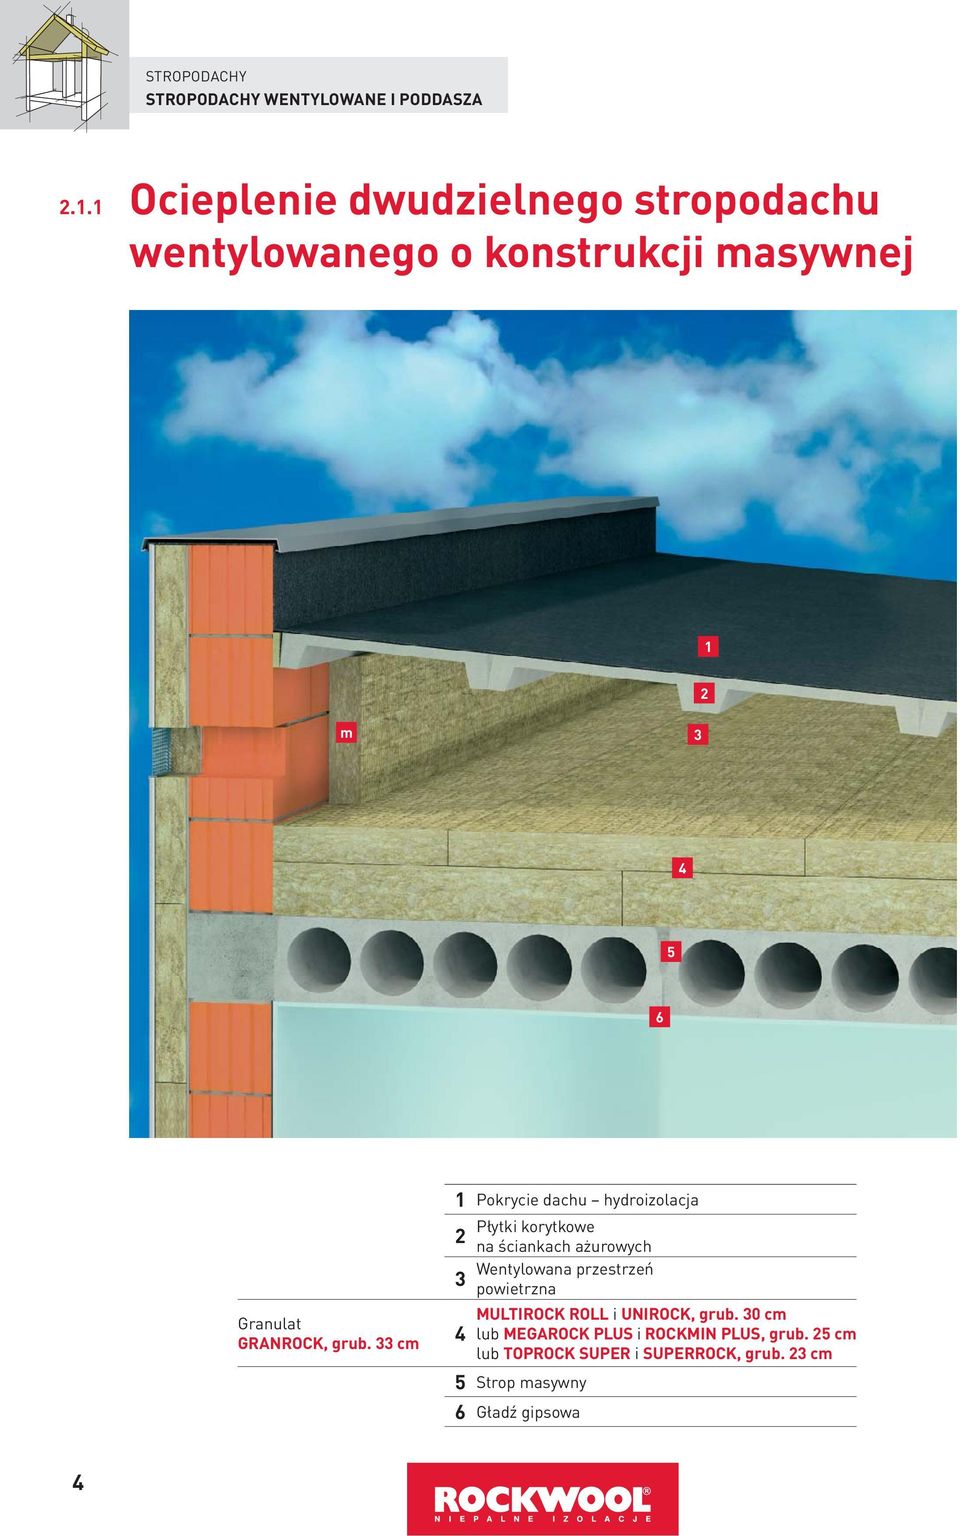 grub. cm 1 Pokrycie dachu hydroizolacja Płytki korytkowe 2 na ściankach ażurowych Wentylowana przestrzeń